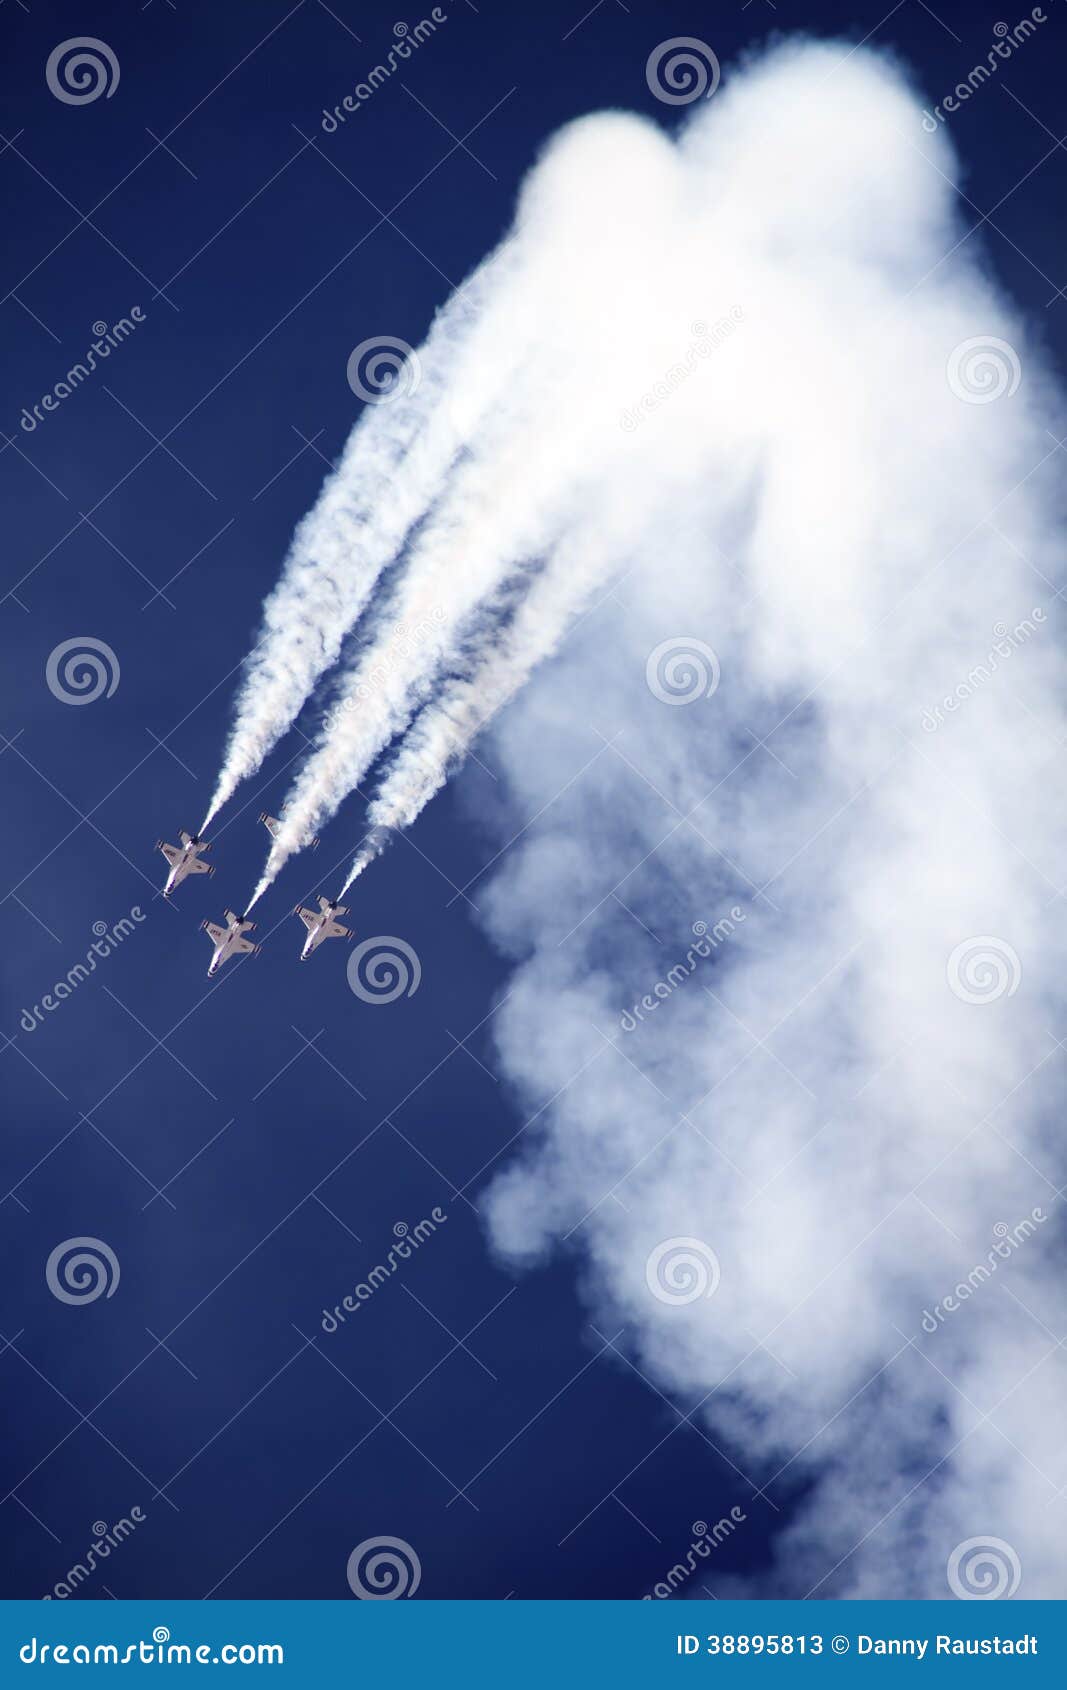 u. s. air force thunderbirds